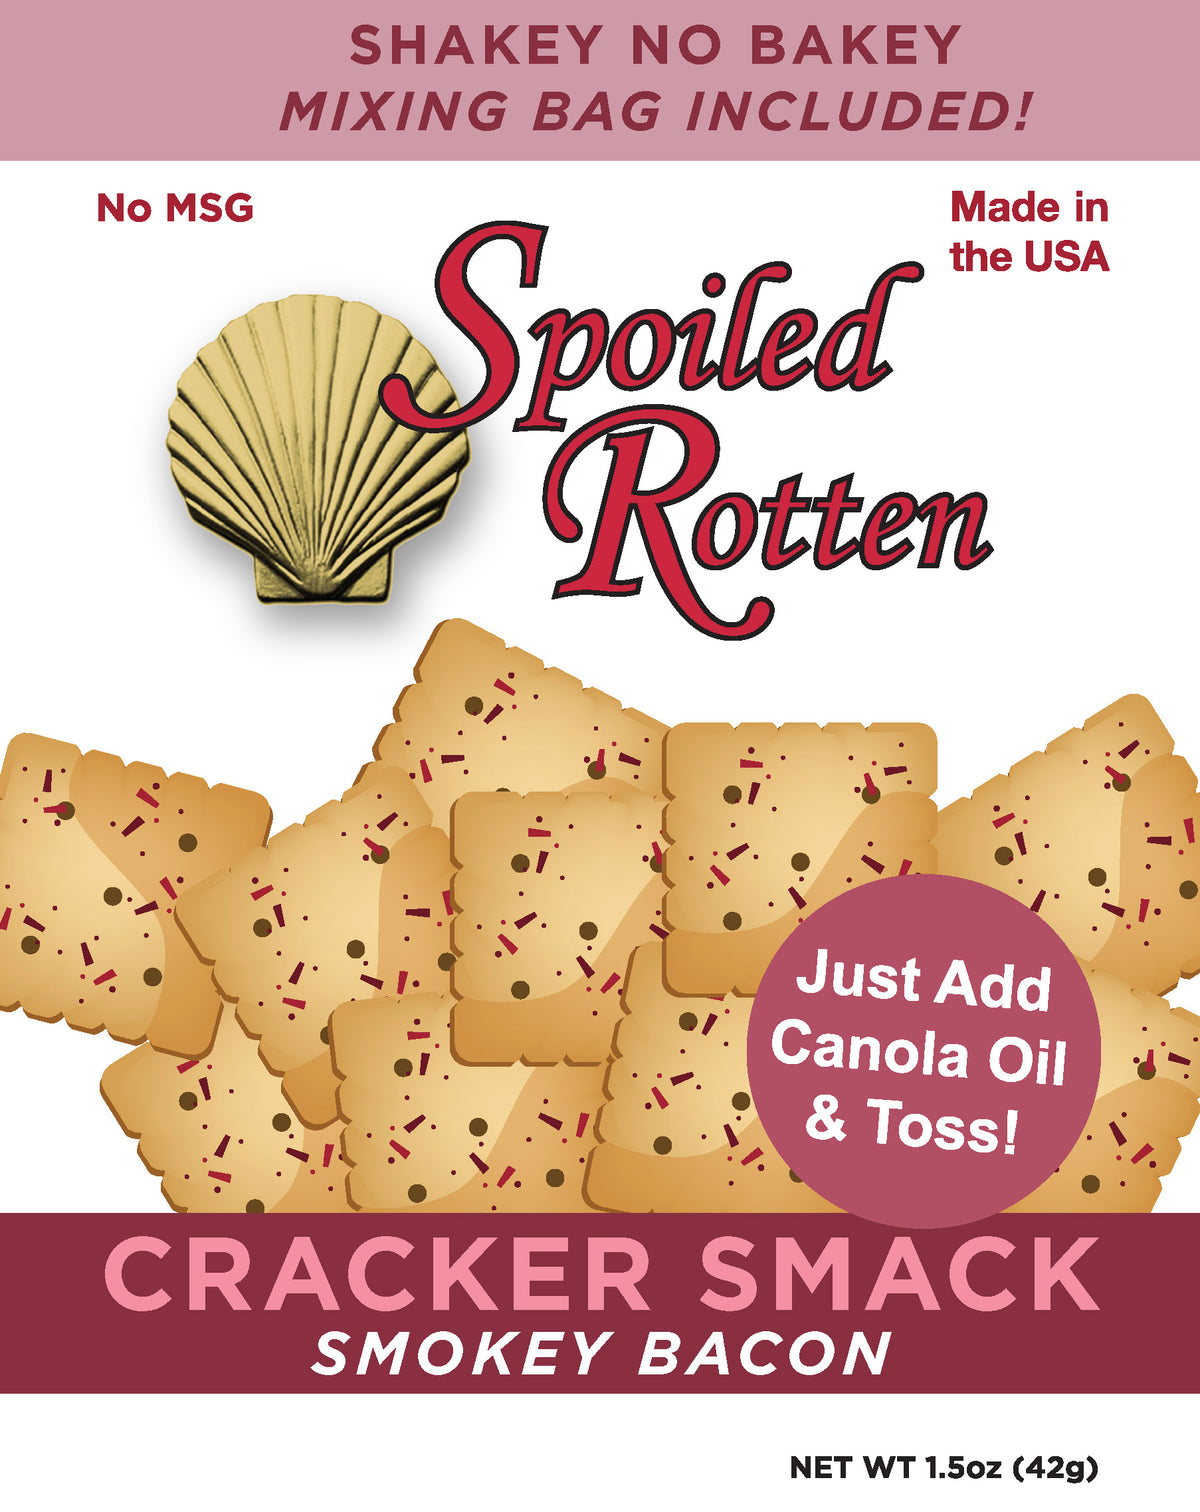 Cracker Smack Smokey Bacon